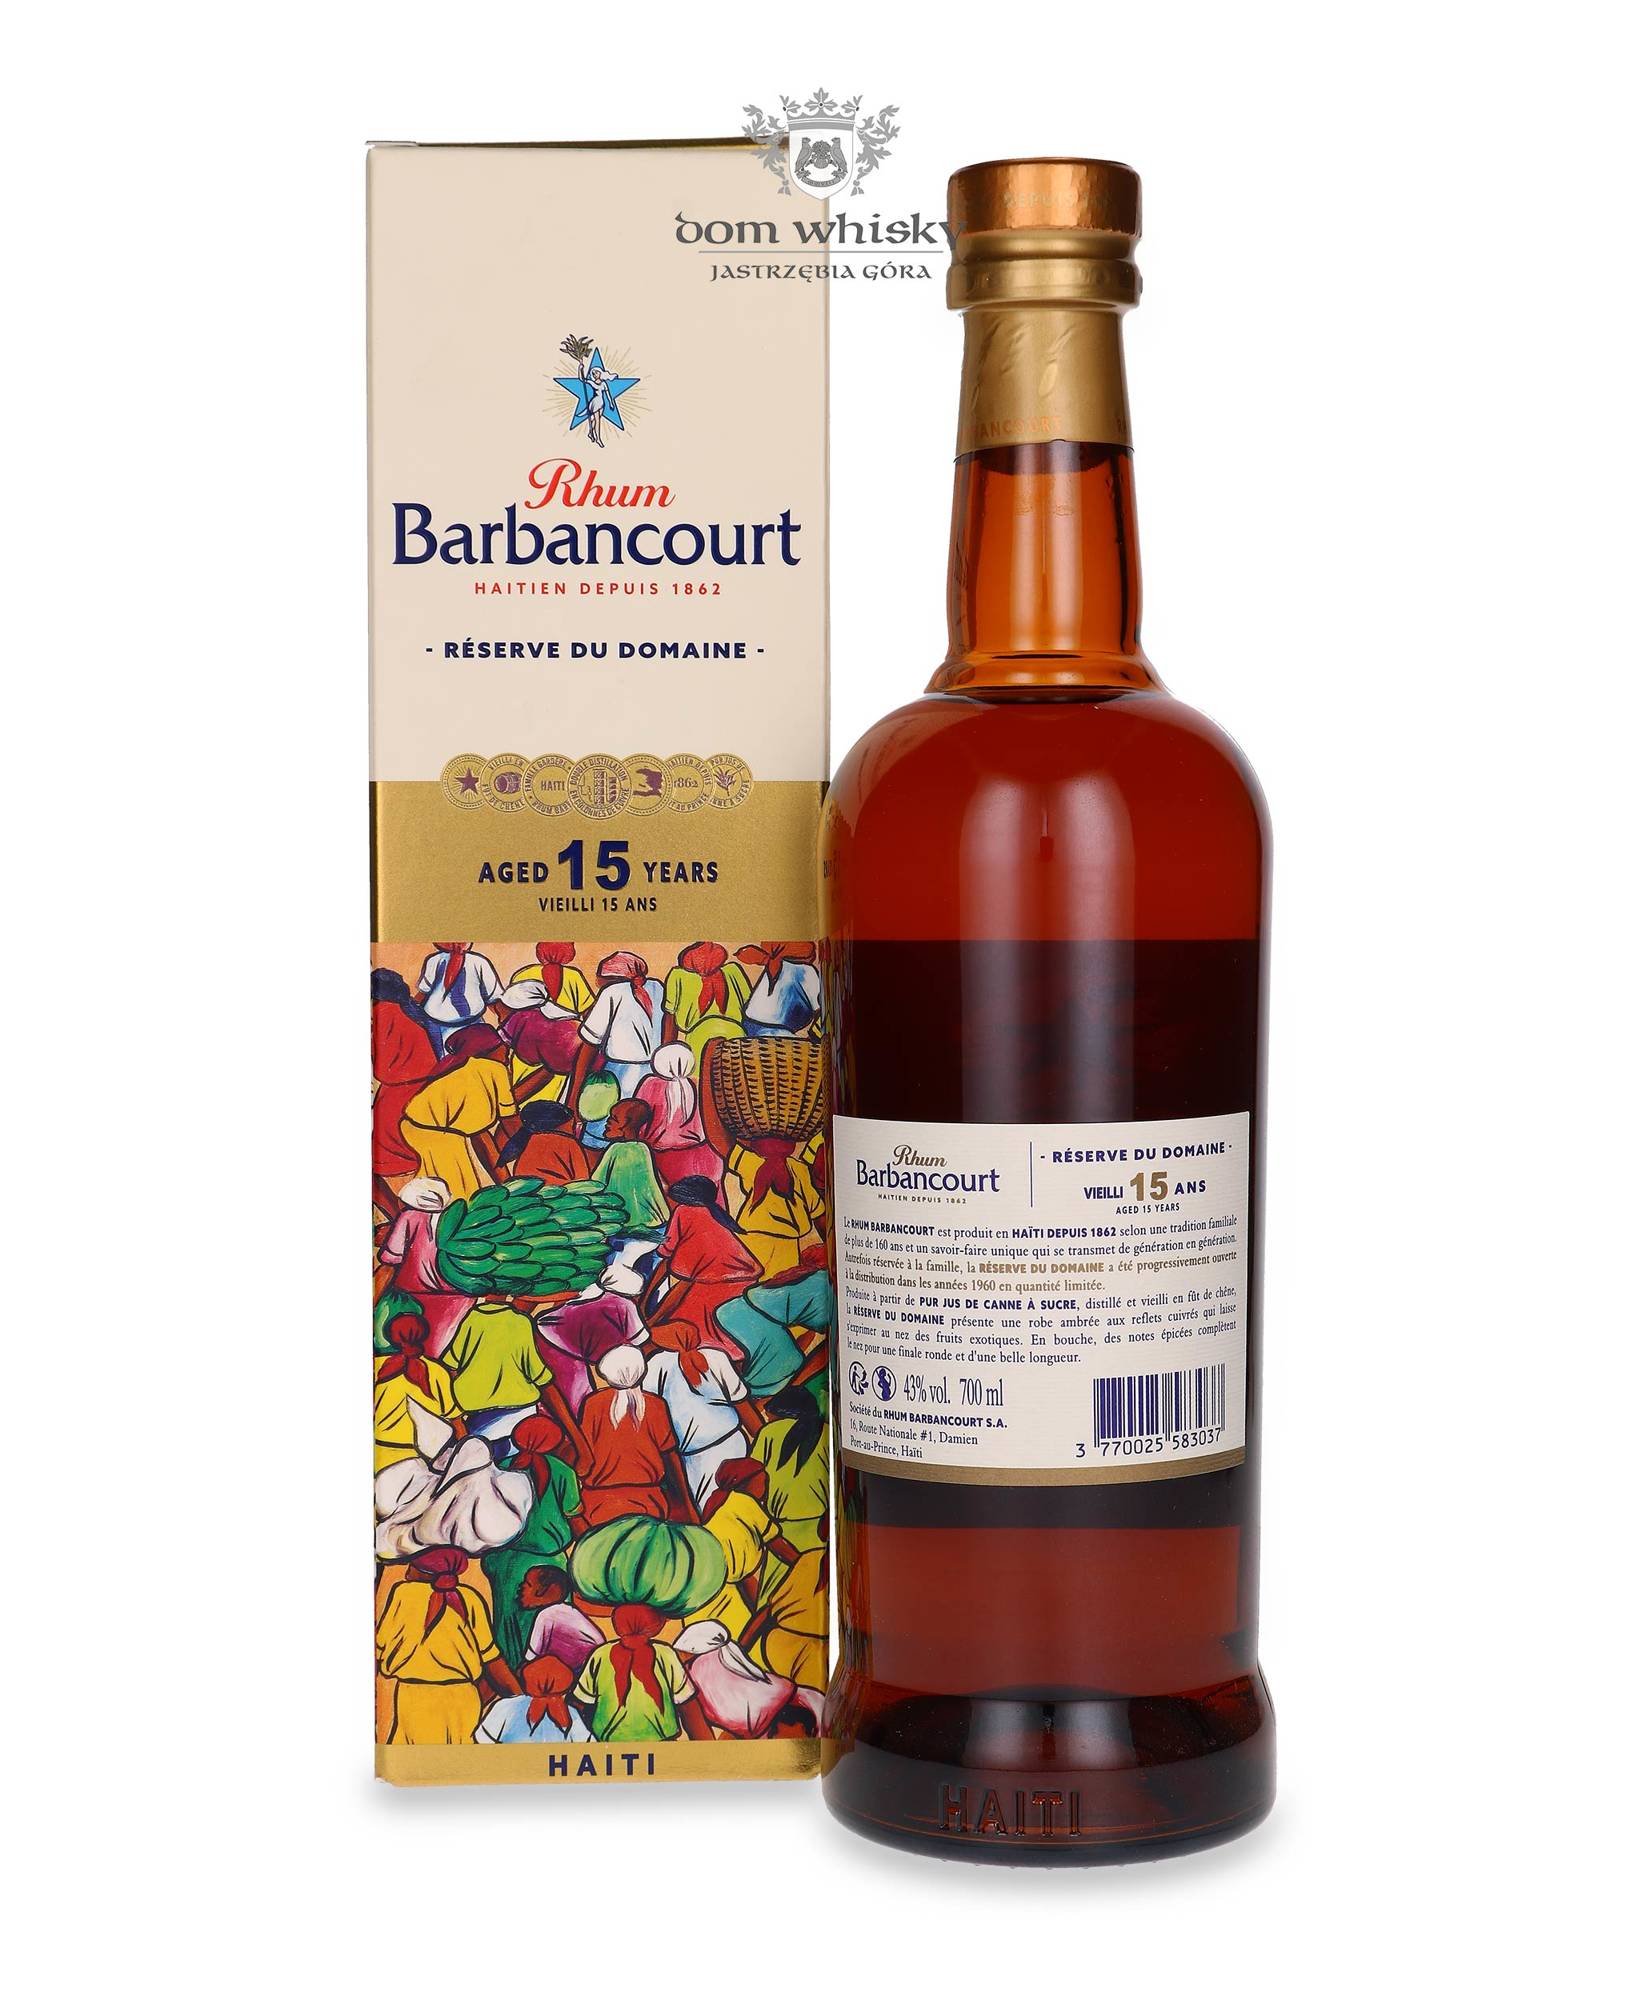 Rhum Barbancourt 4 Year 3 Star Rum 750ml -, Haiti